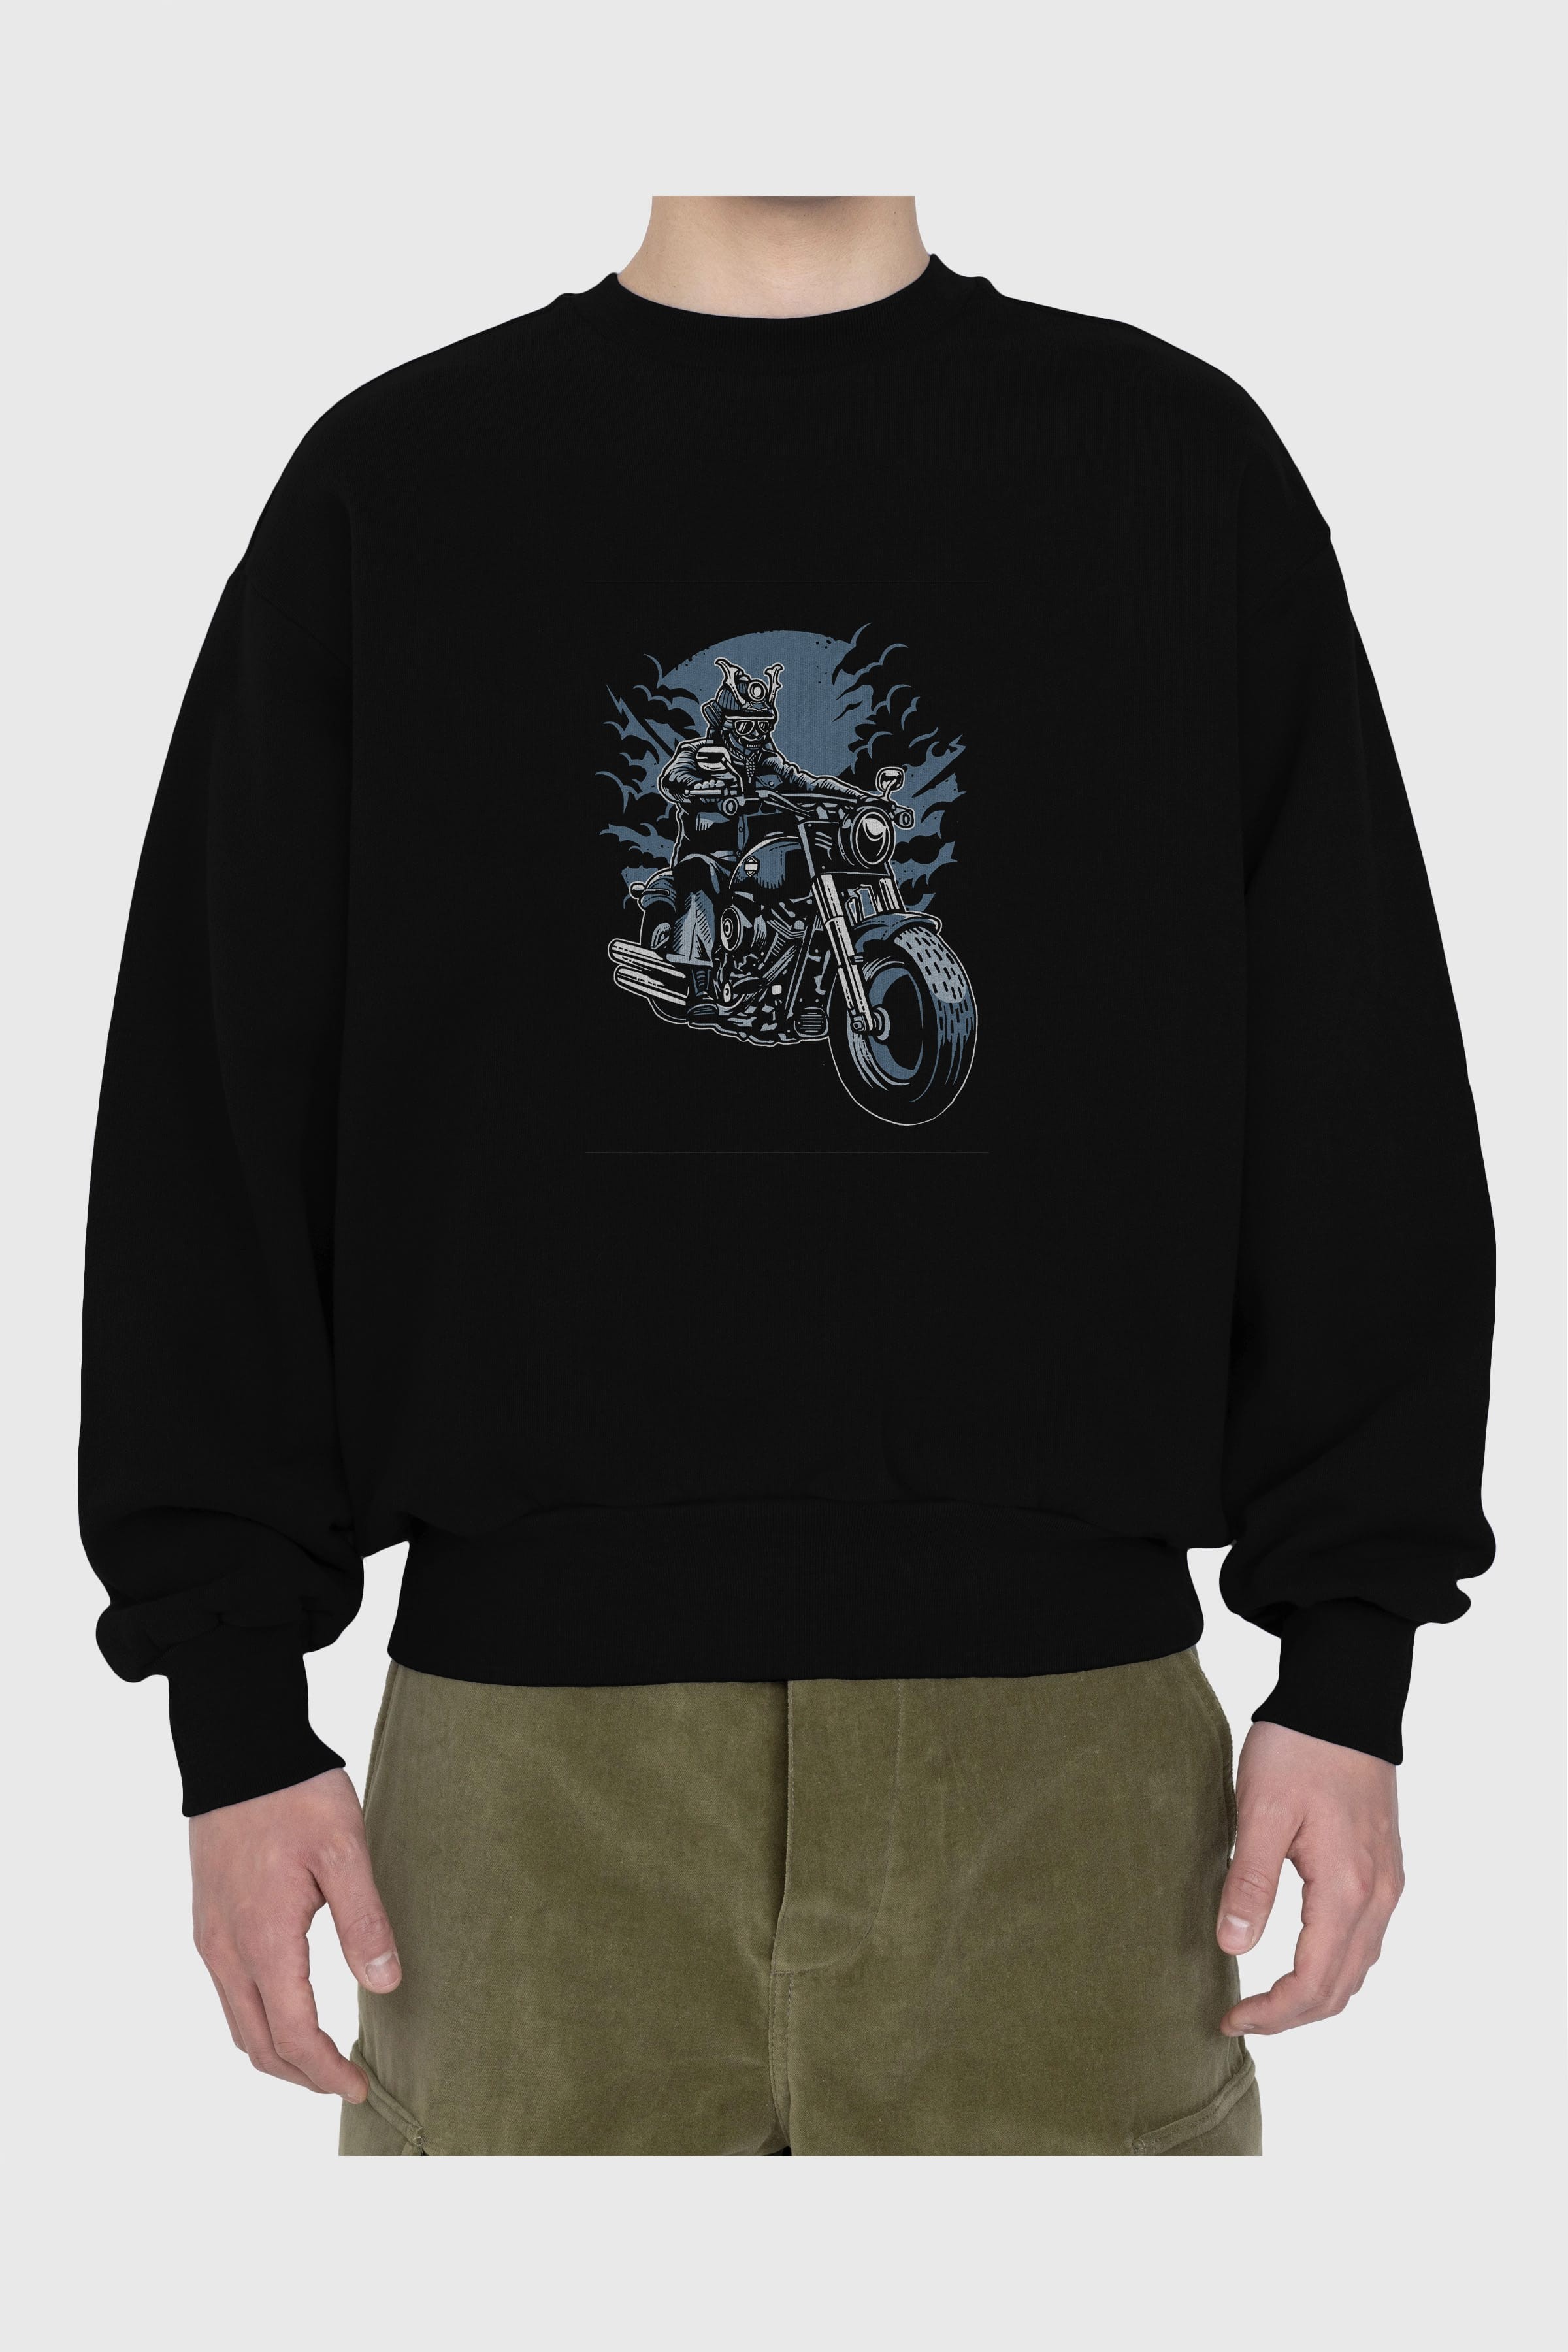 Samurai Ride Ön Baskılı Oversize Sweatshirt Erkek Kadın Unisex